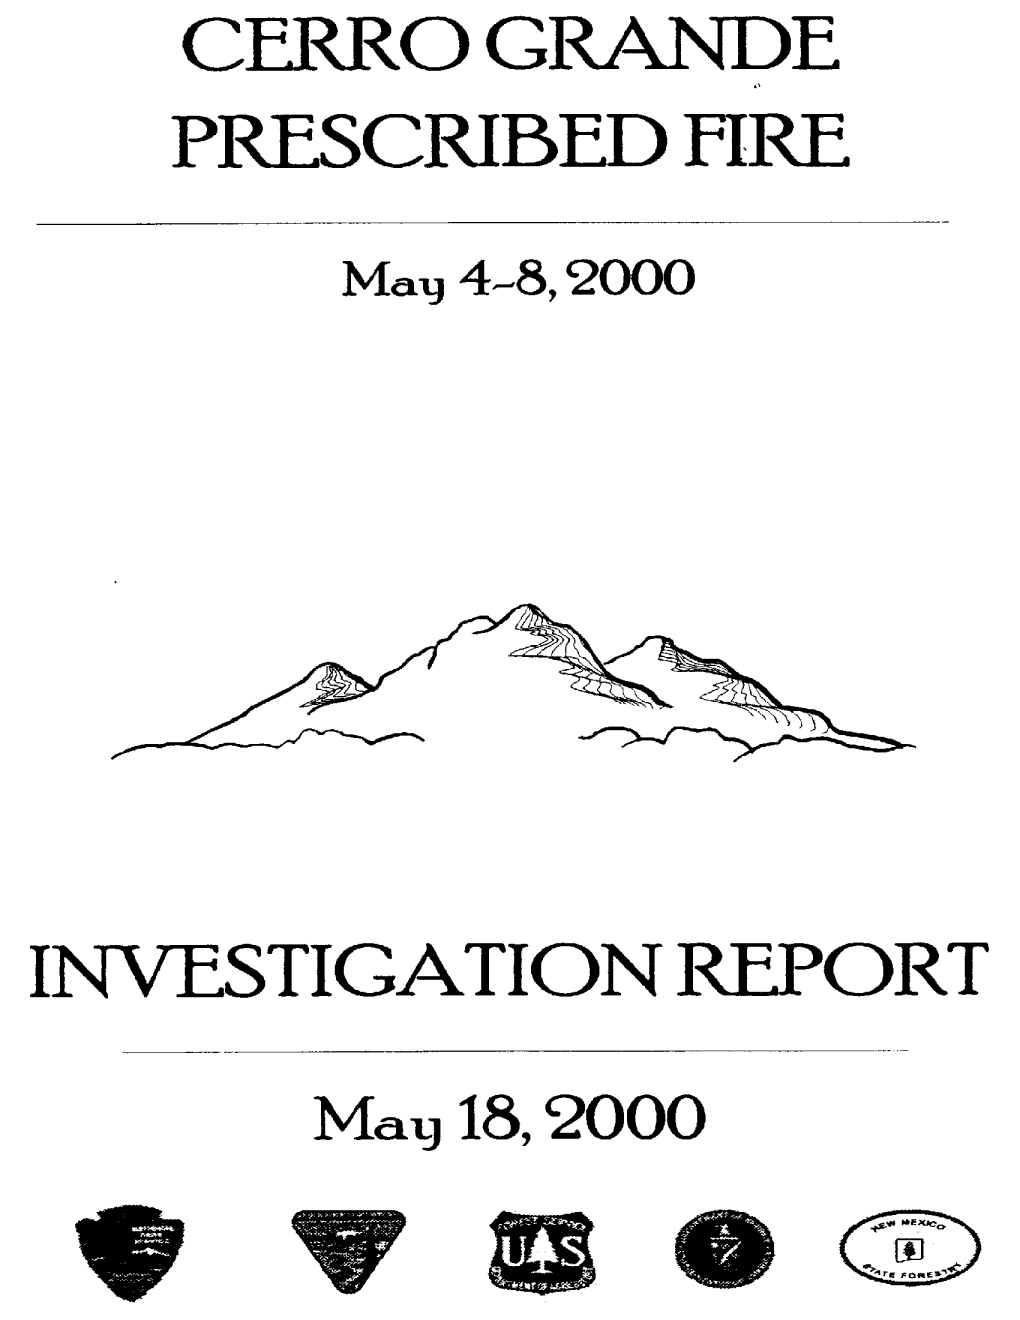 Cerro Grande Investigation Report